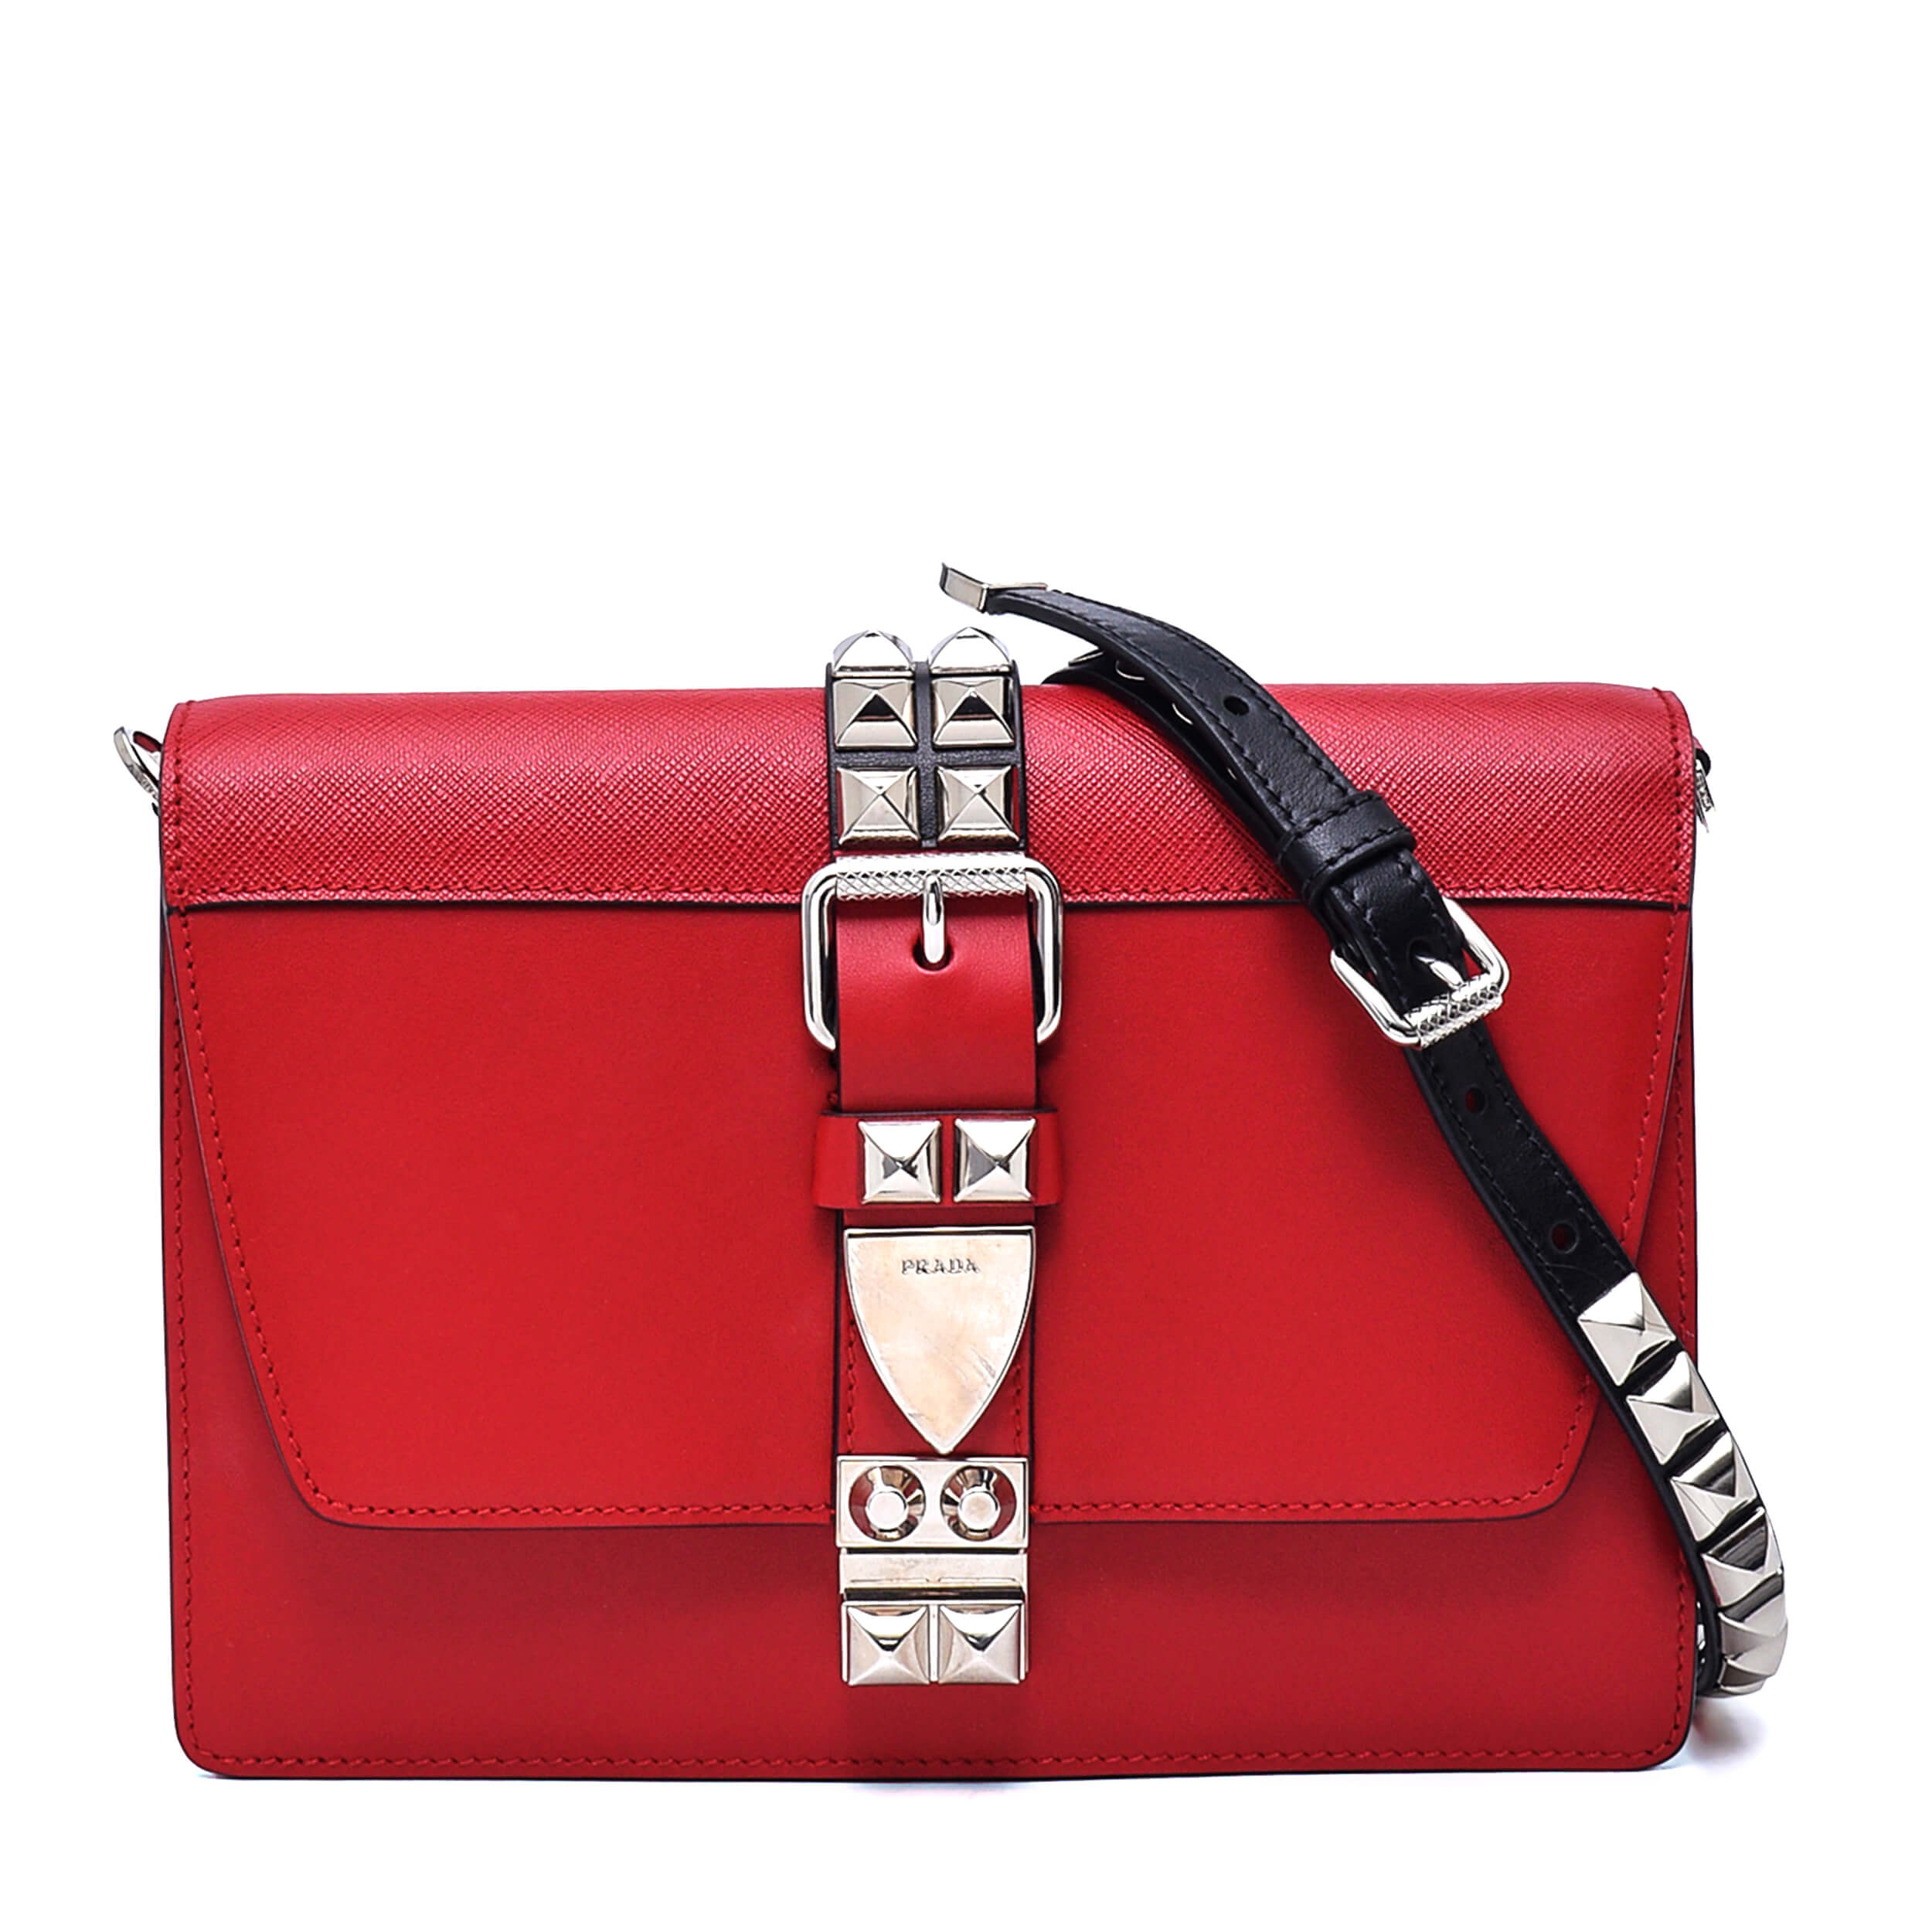 Prada - Red Calfskin Leather Elektra City Bag 